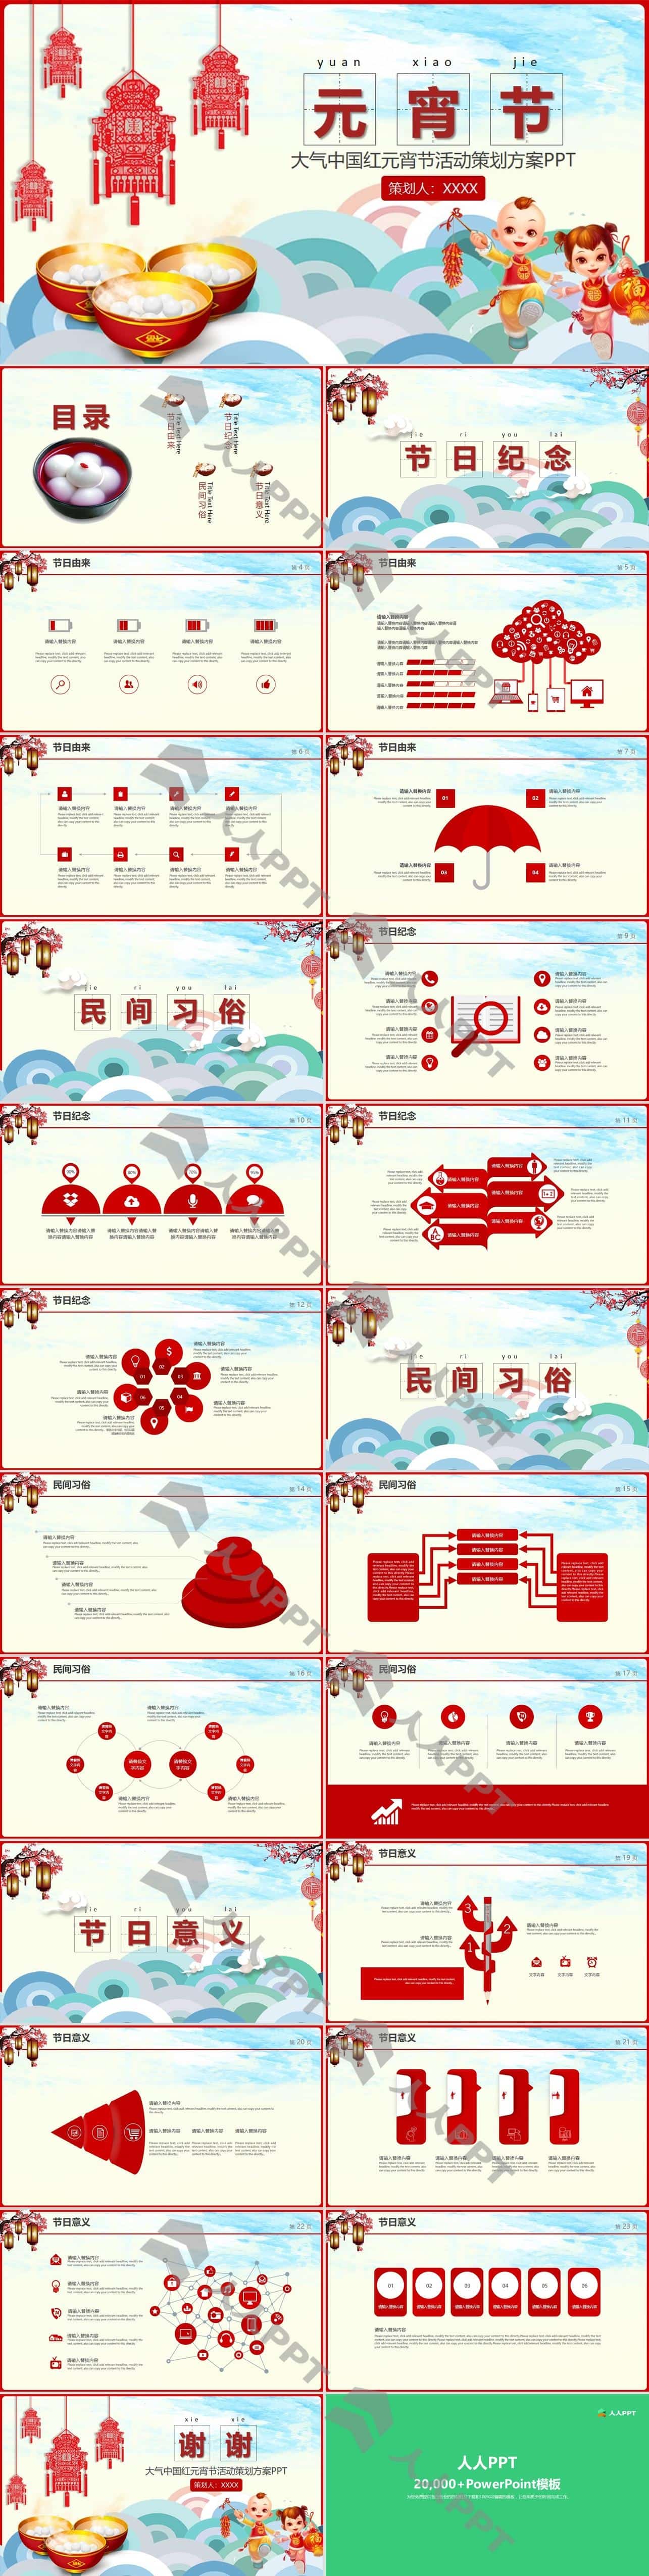 中国红元宵节汤圆策划方案PPT模板长图